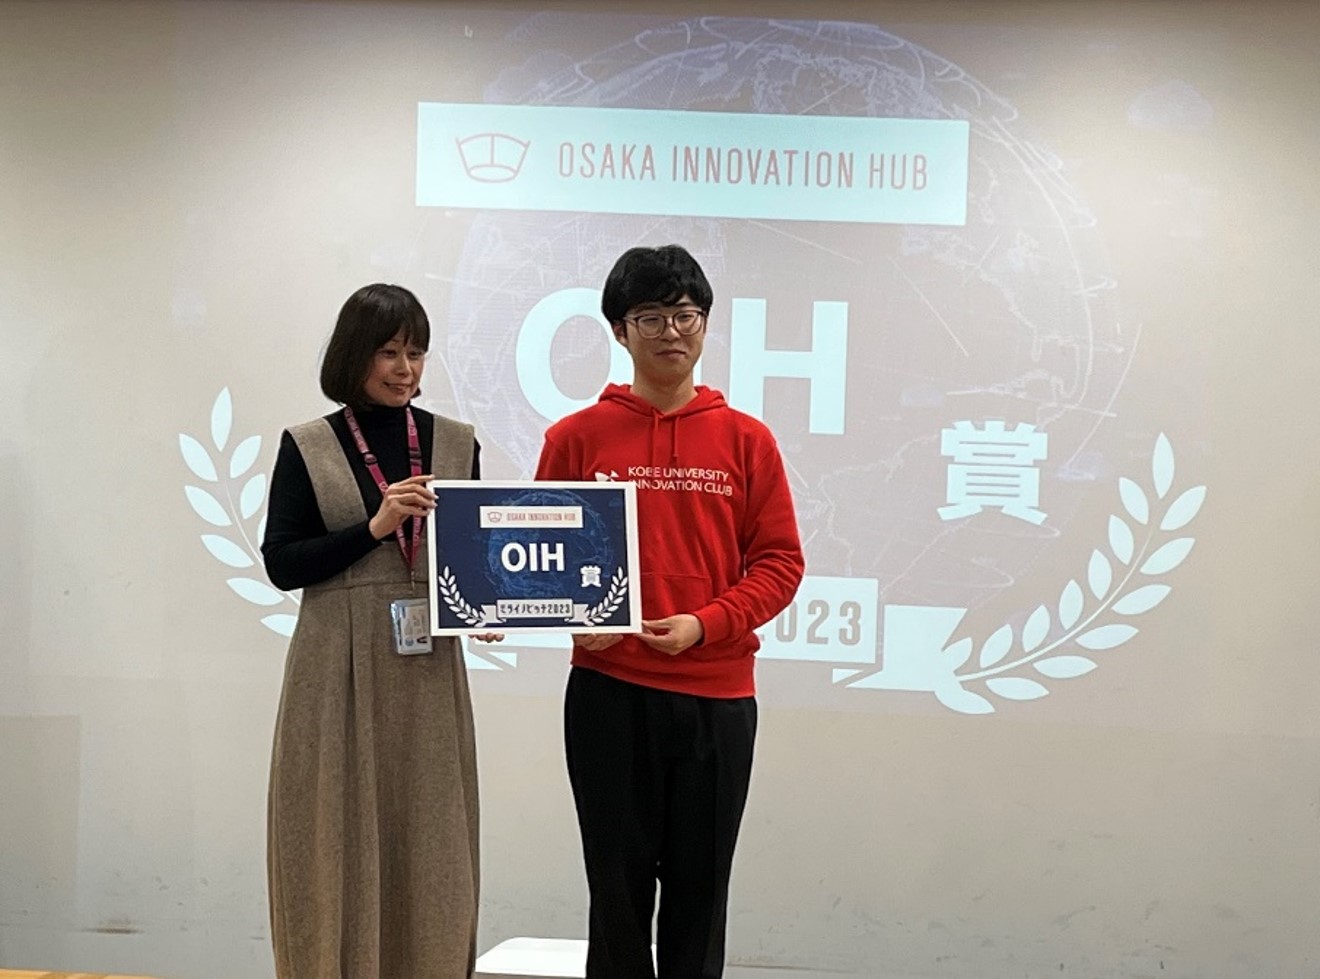 「ミライノピッチ2023」で神戸大学起業部FairMed がグランプリのNICT賞を受賞しました。